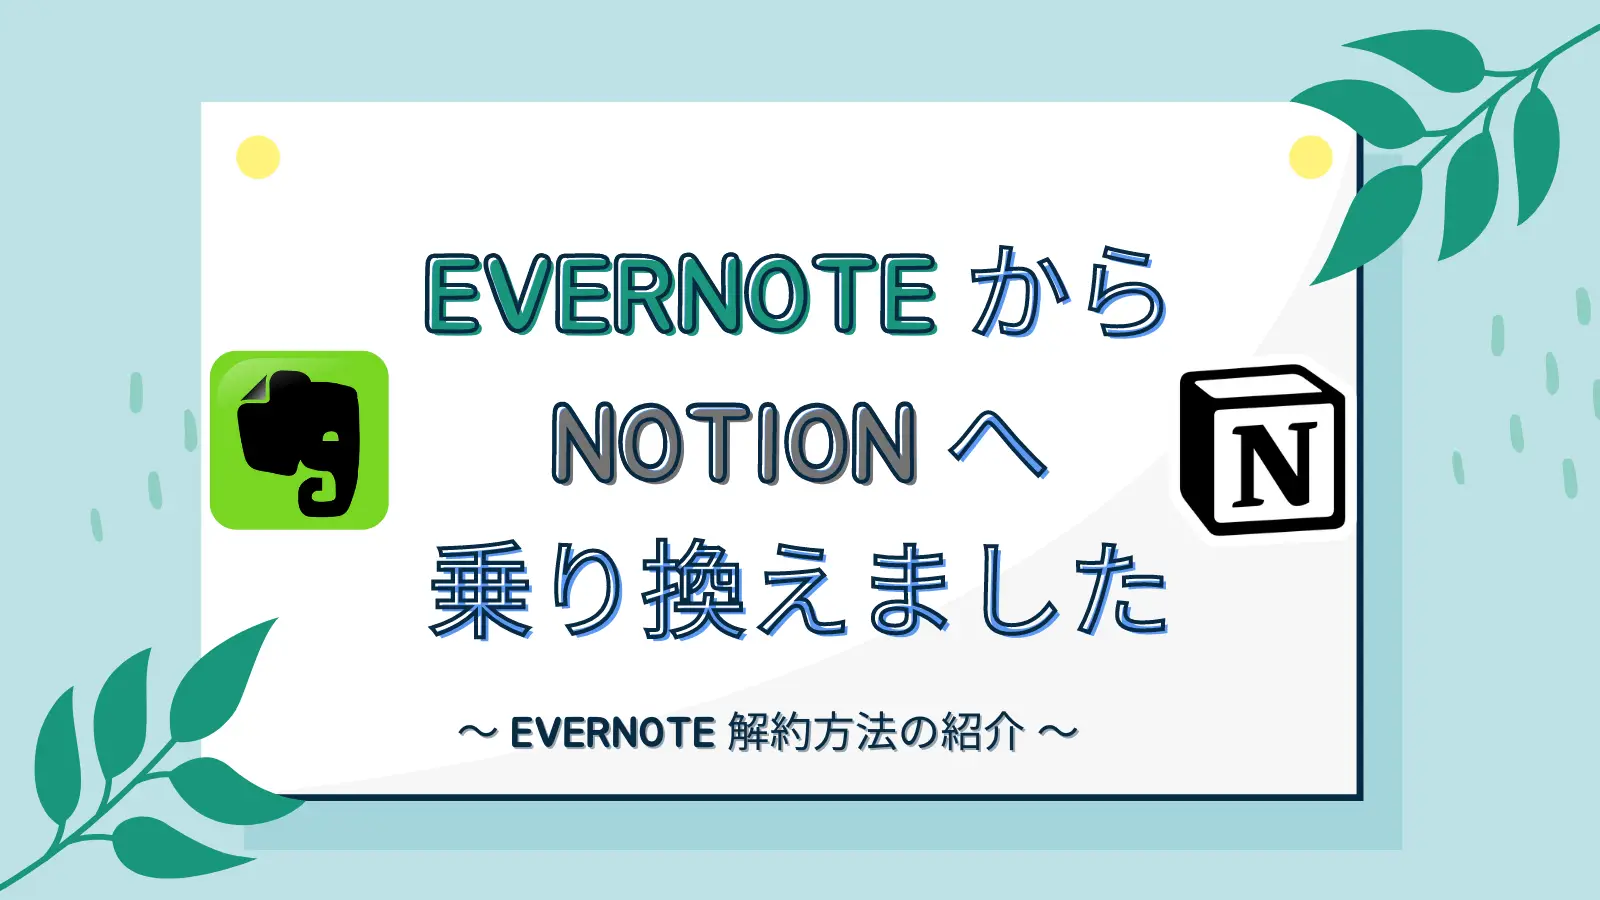 Evernote から Notion へ乗り換えました